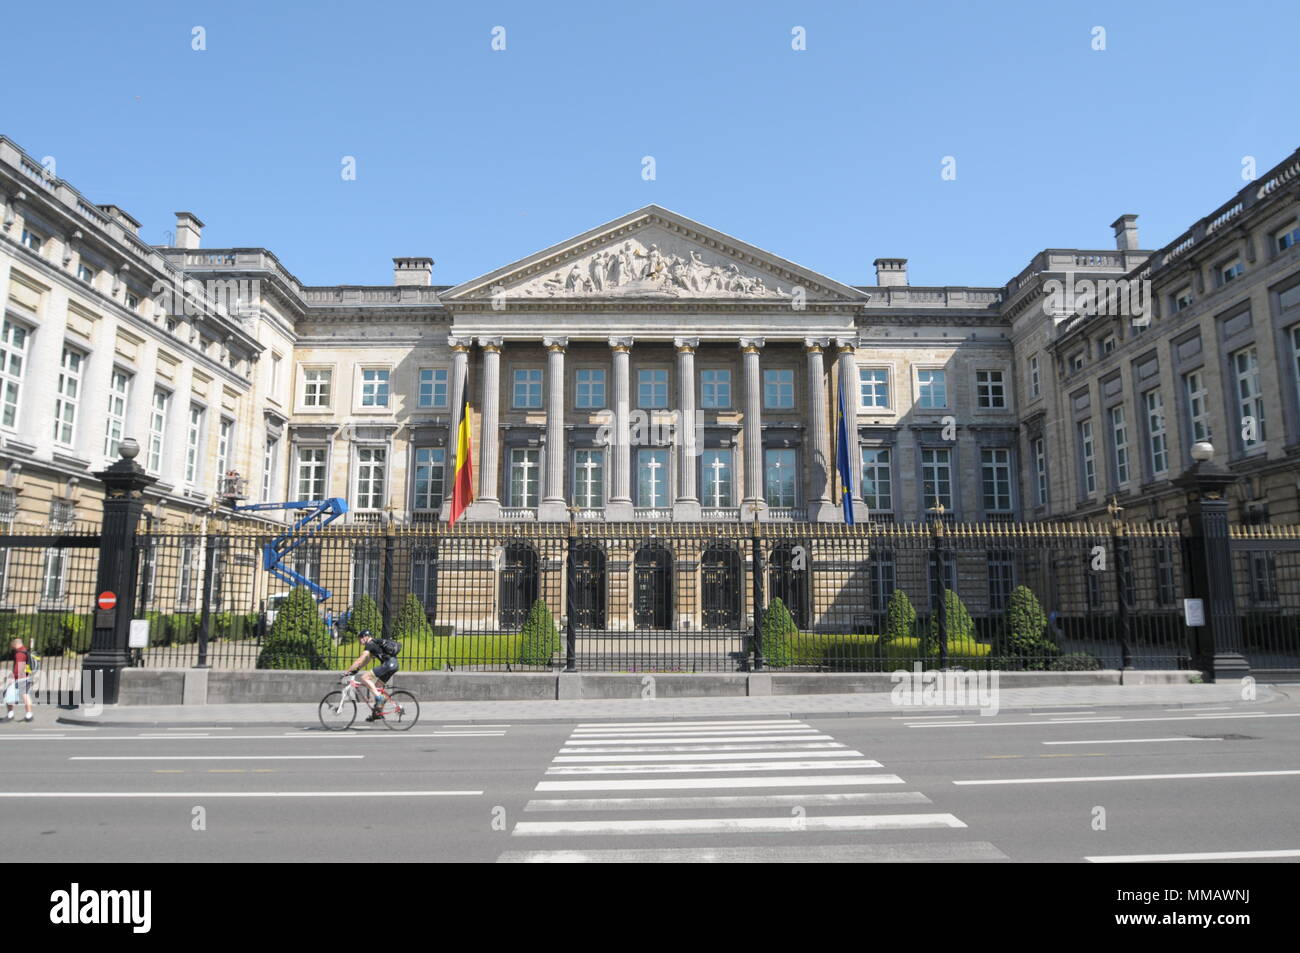 Belgische Kamer van Volksvertegenwoordigers, der Palast der Nation, Parlement, Rue de la Loi, Brüssel, Belgien, April 2018. Stockfoto